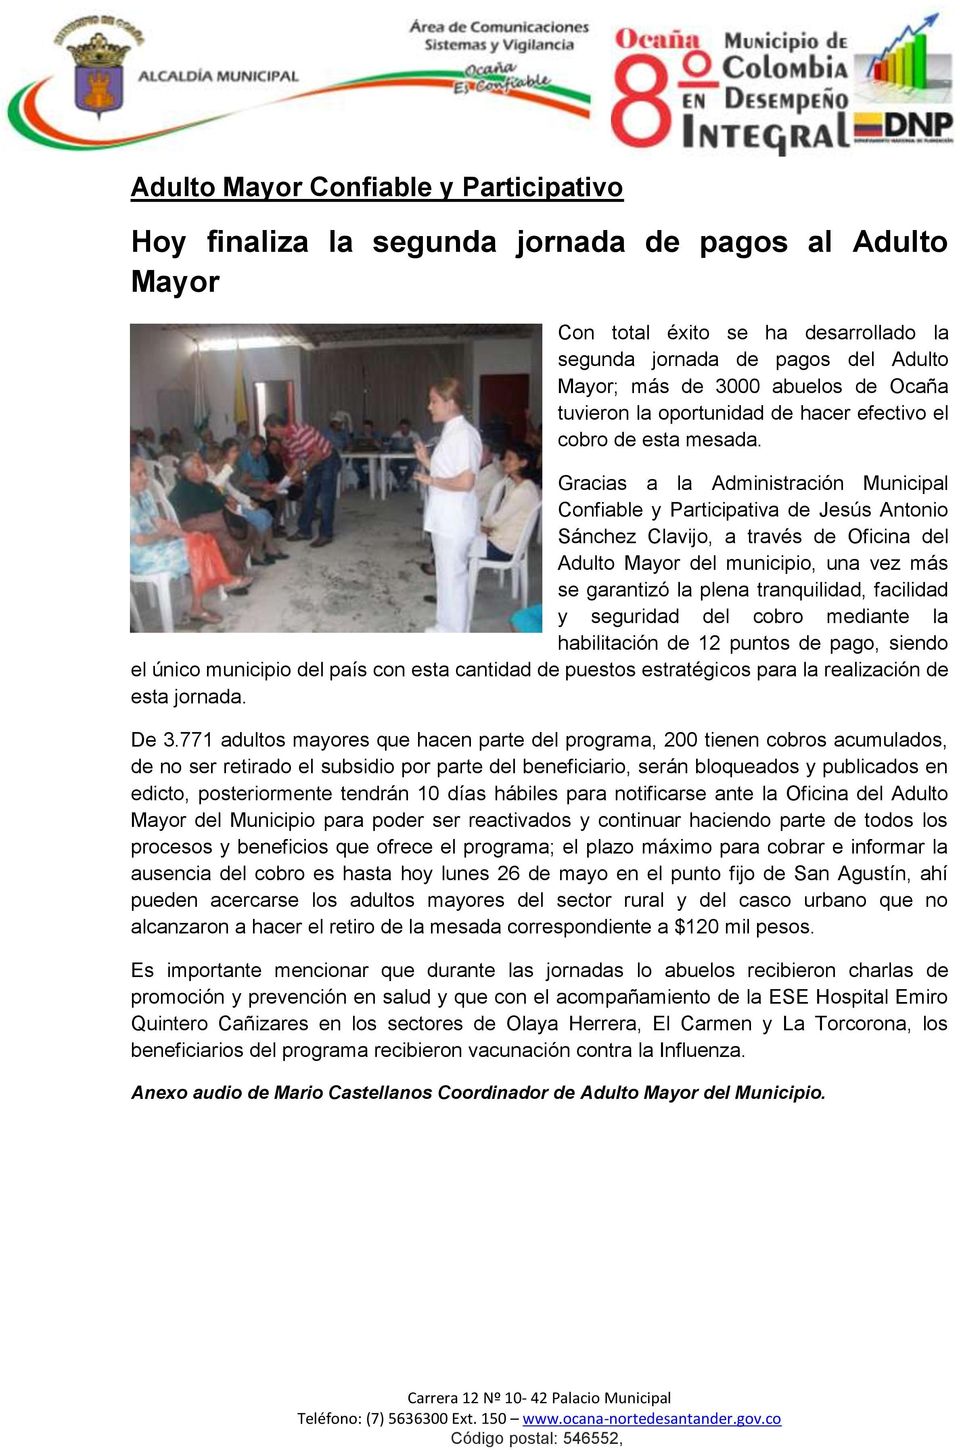 Gracias a la Administración Municipal Confiable y Participativa de Jesús Antonio Sánchez Clavijo, a través de Oficina del Adulto Mayor del municipio, una vez más se garantizó la plena tranquilidad,